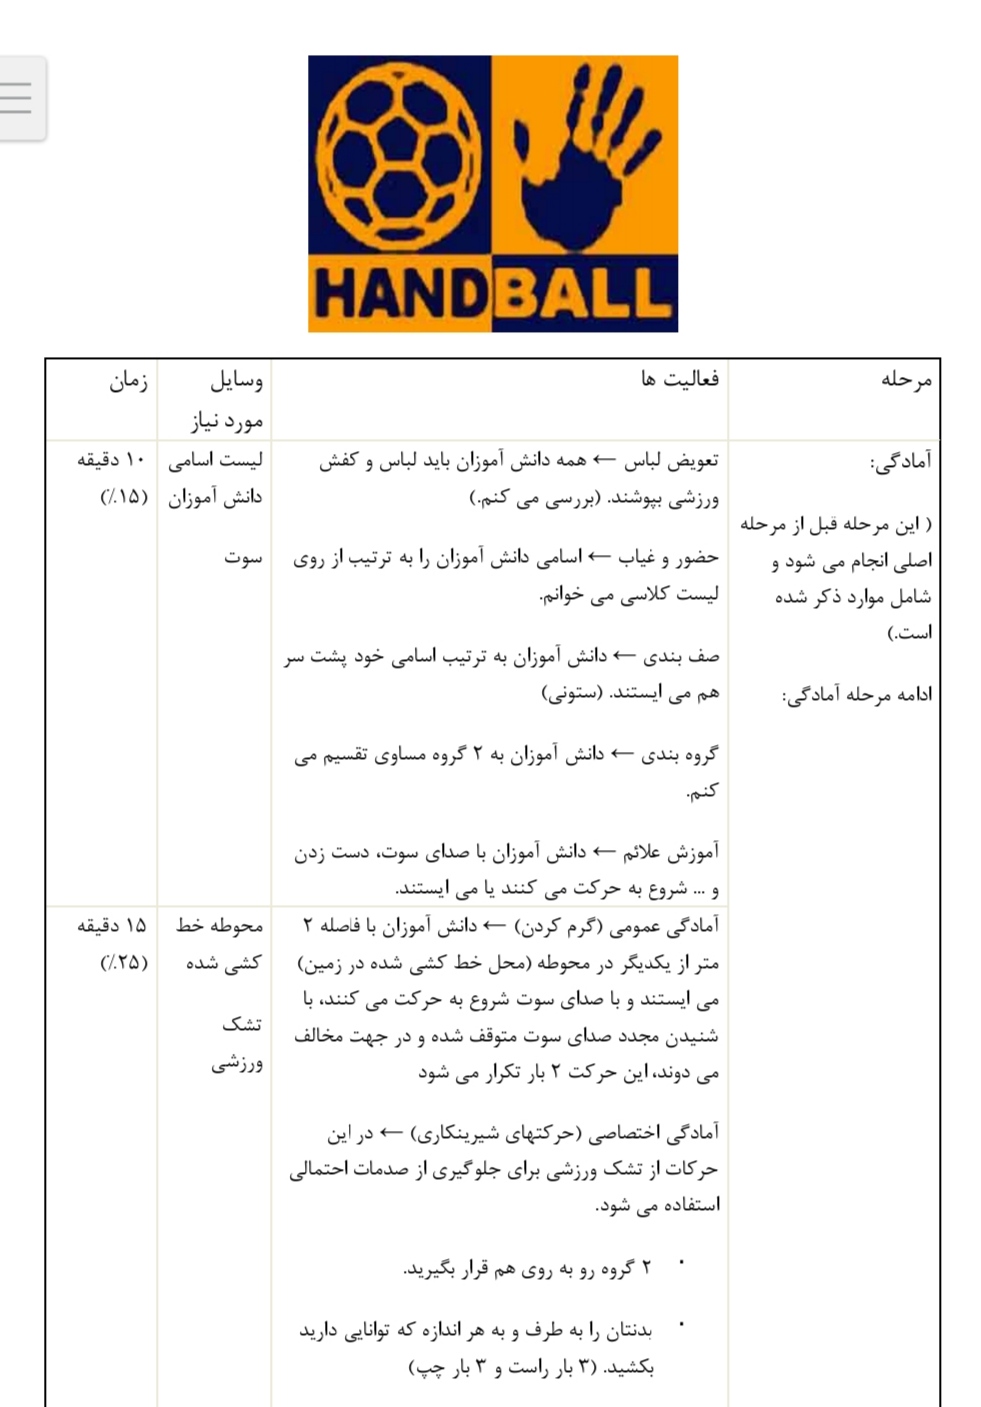 طرح درس روزانه هندبال چهارم ابتدایی بصورت pdf در 4 صفحه